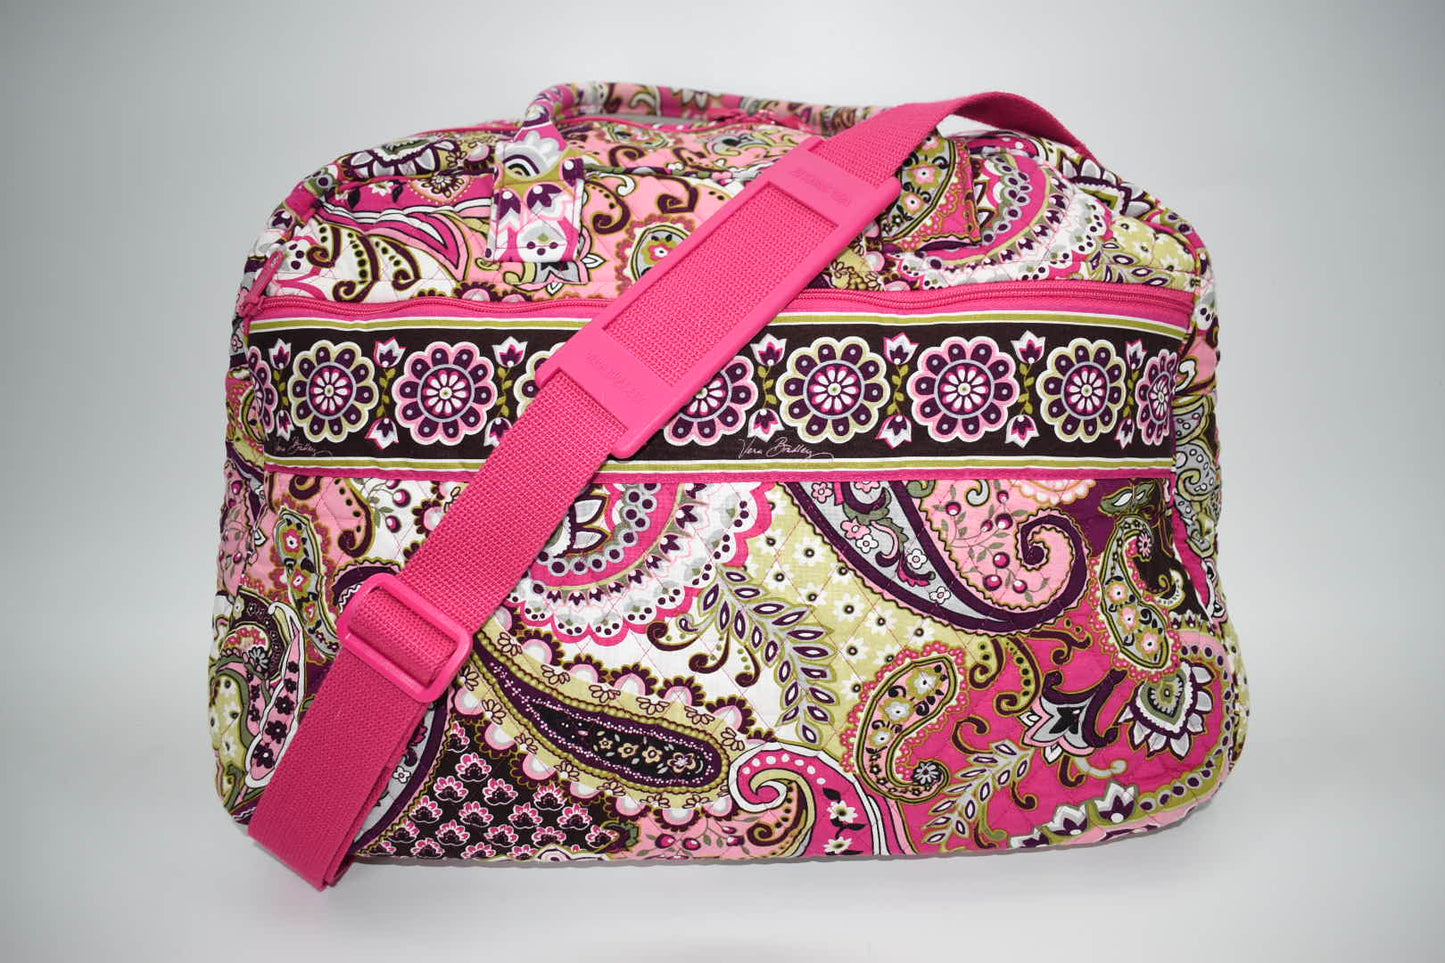 Vera Bradley Weekender Travel Bag  in "Very Berry Paisley" Pattern